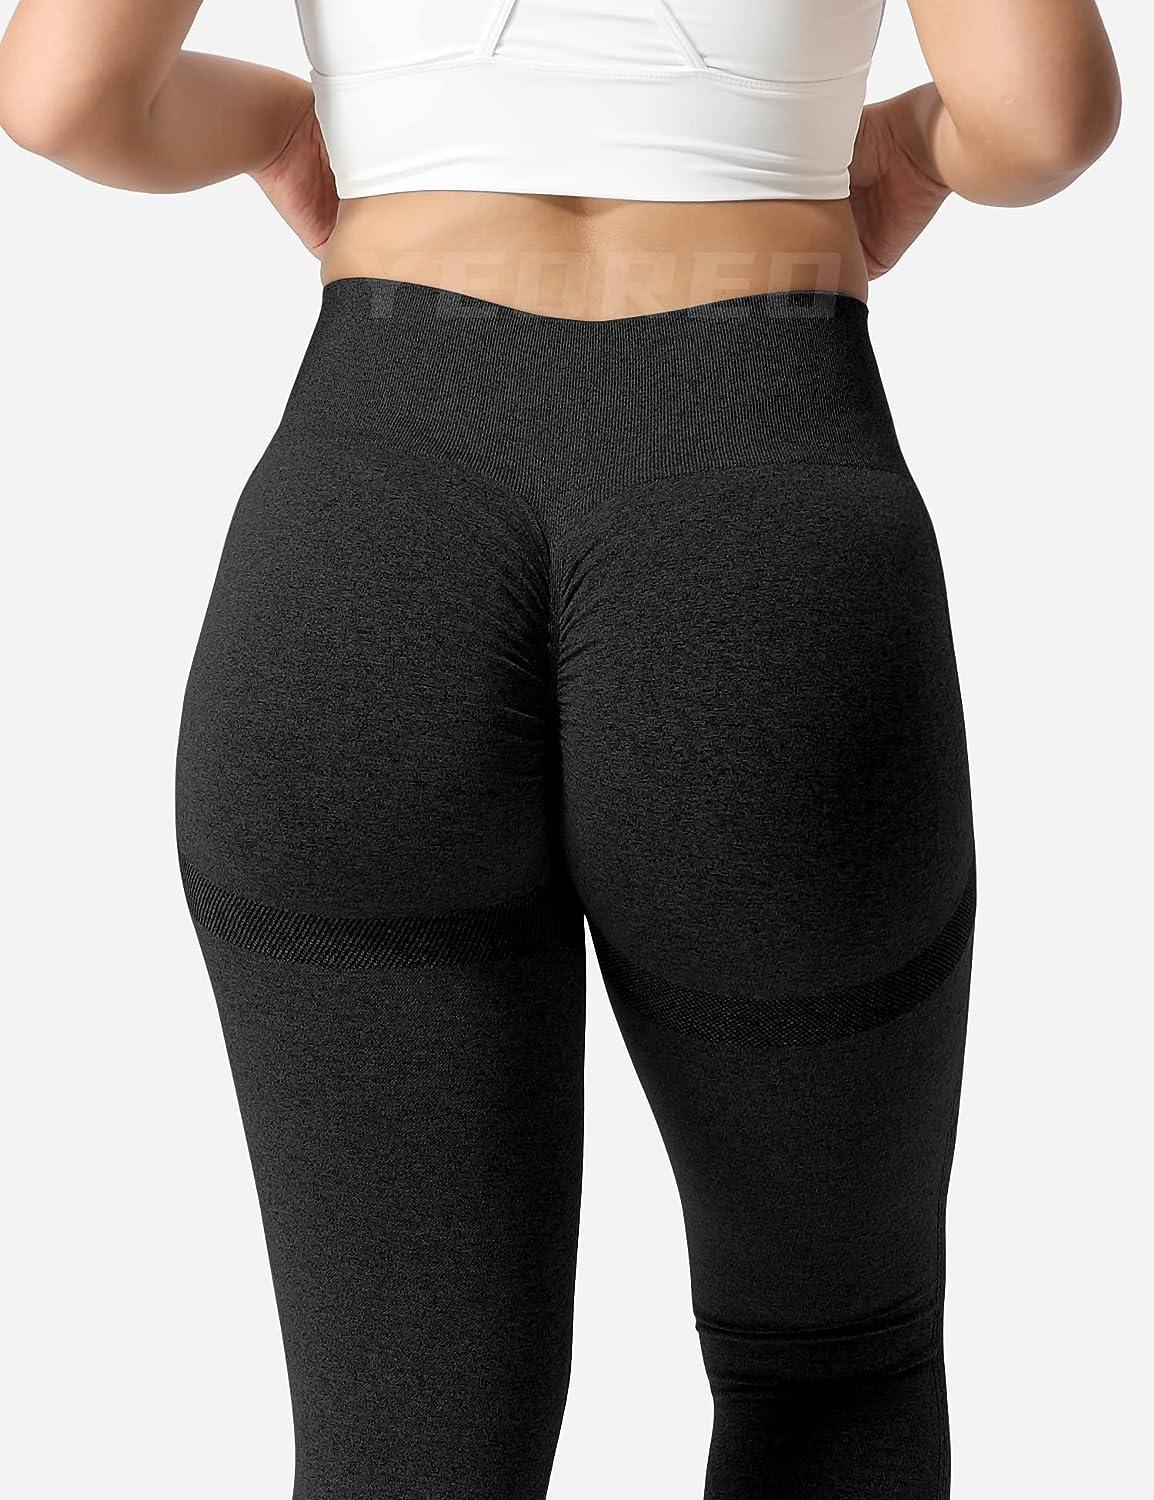  Scrunch Butt Lift Leggings For Women Workout Yoga